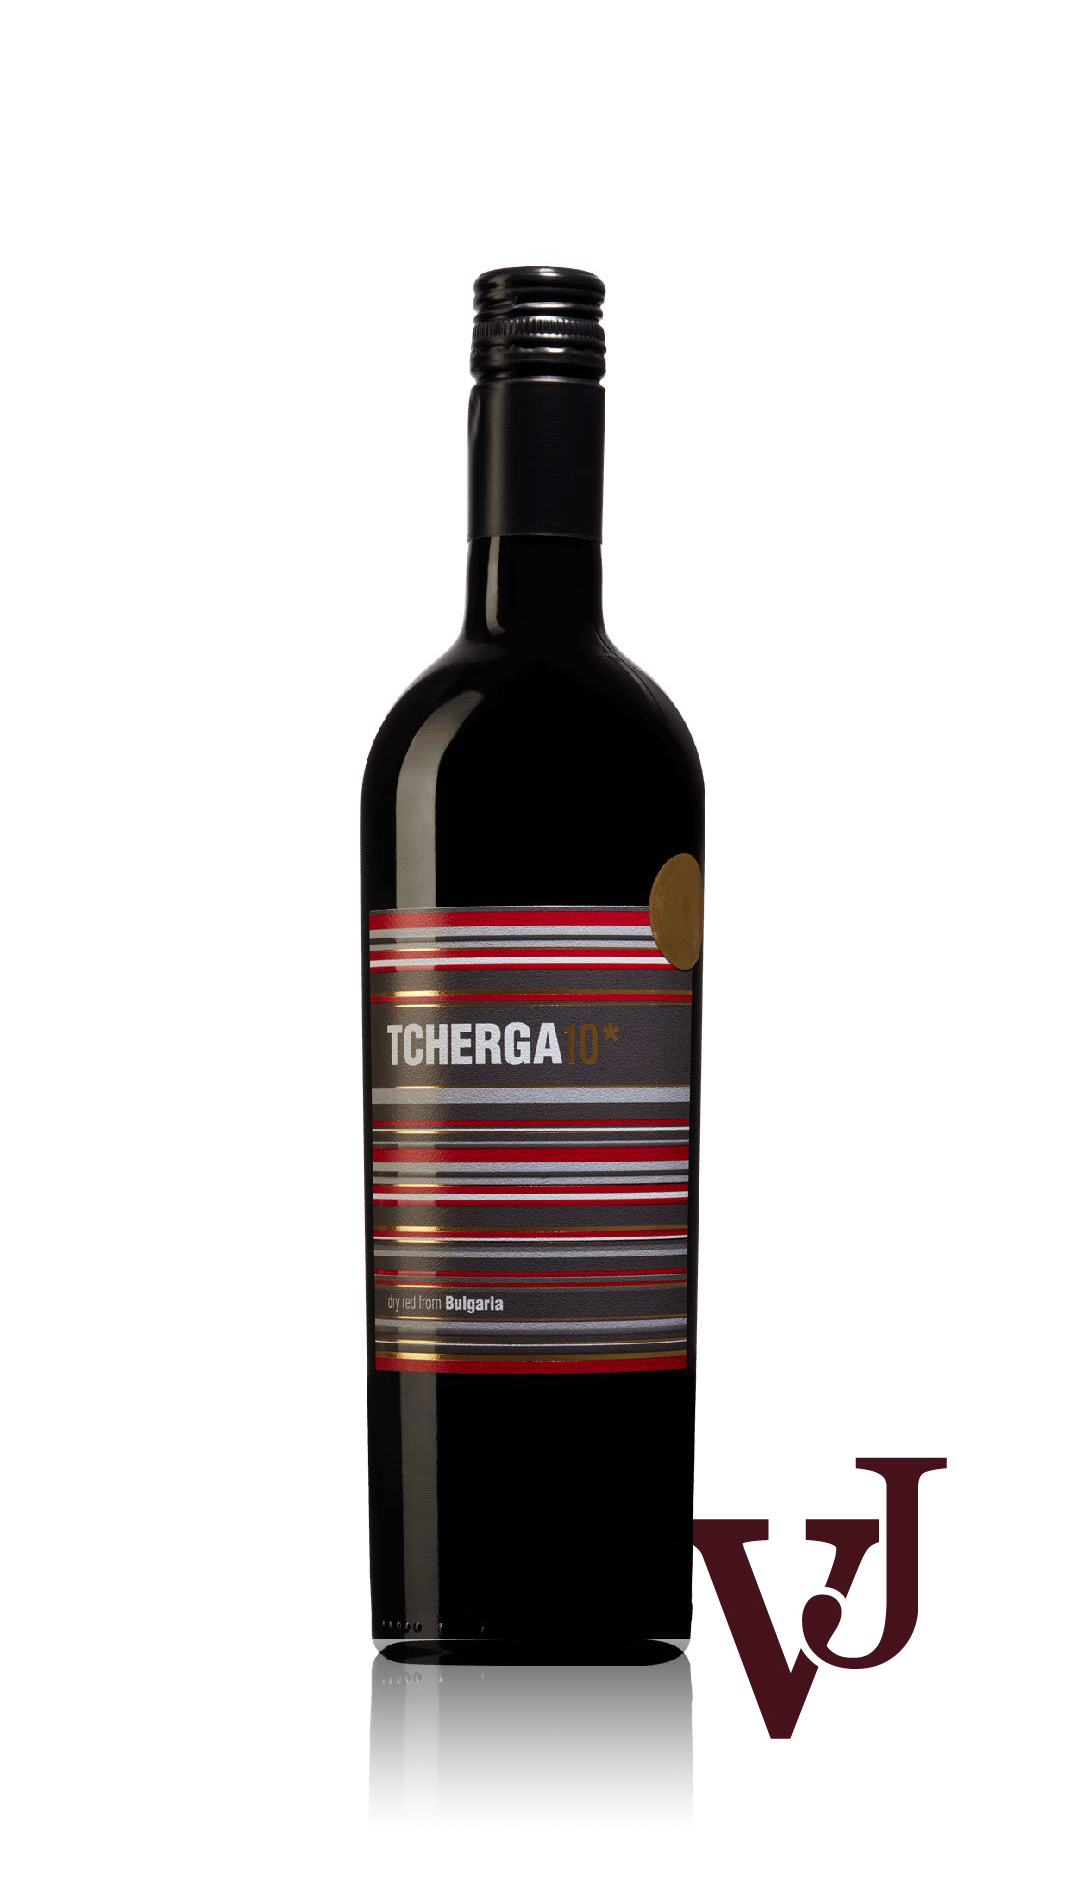 Rött Vin - Tcherga10 Rubin Merlot Syrah 2019 artikel nummer 209101 från producenten Domaine Menada från området Bulgarien